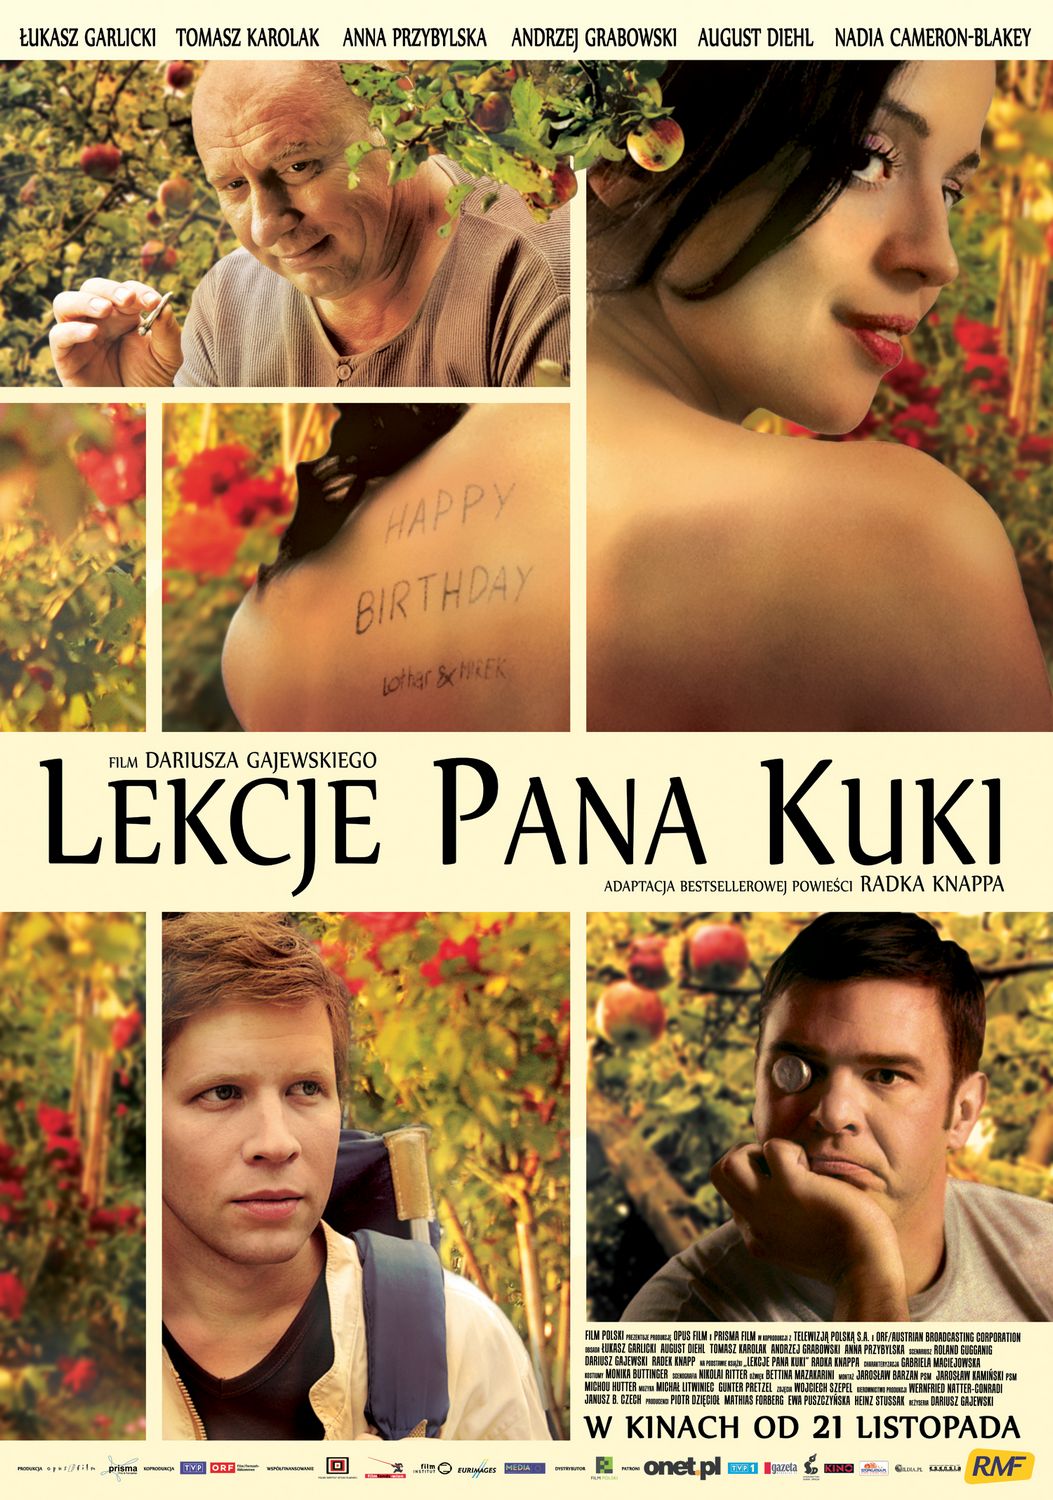 Extra Large Movie Poster Image for Herrn Kukas Empfehlungen (aka Lekcje pana Kuki) 